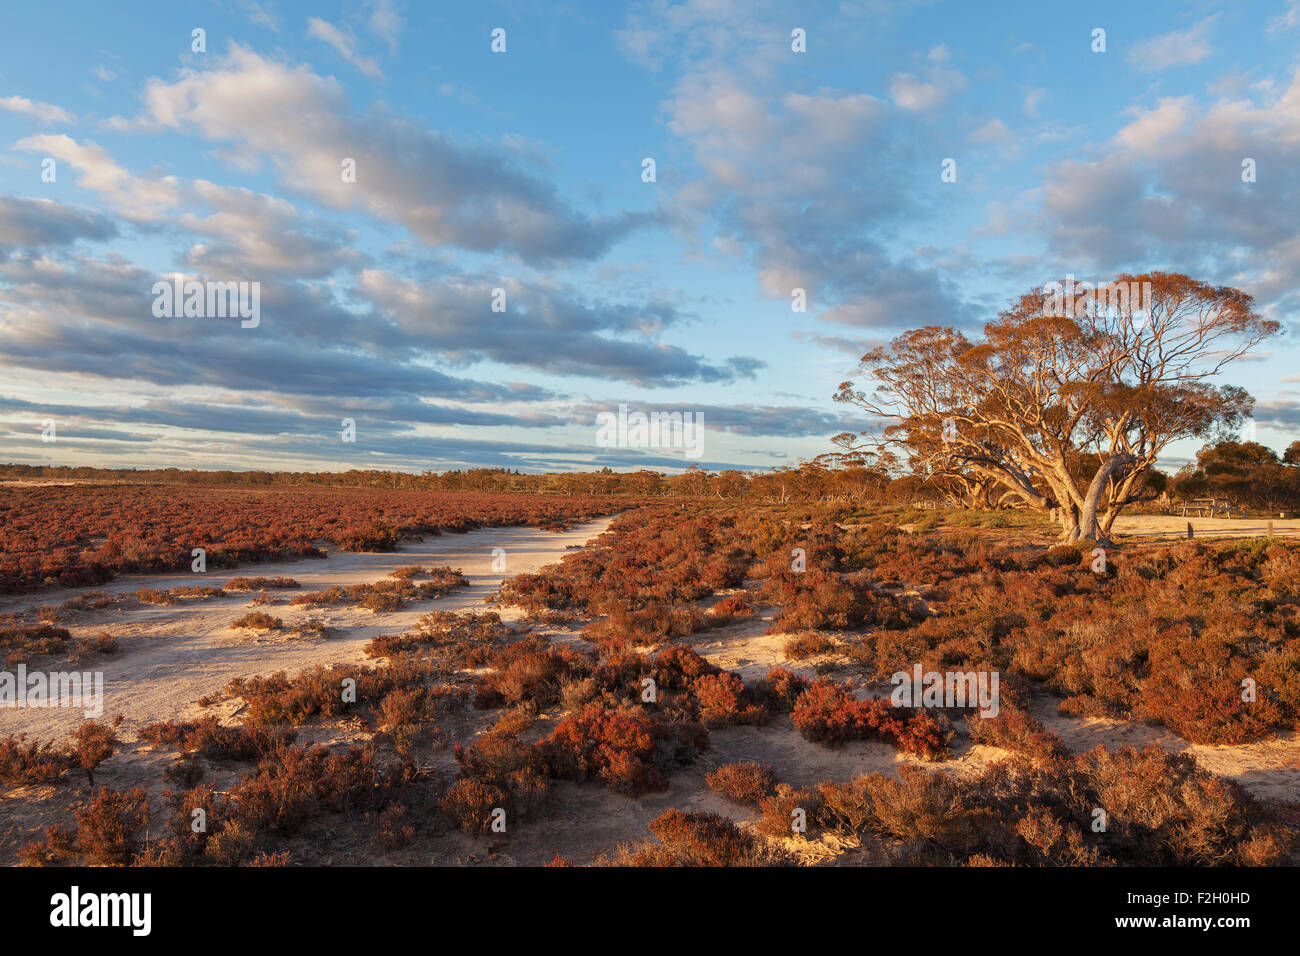 Les arbustes du désert australien au coucher du soleil. Parc national de Murray-Sunset, Australie. Banque D'Images